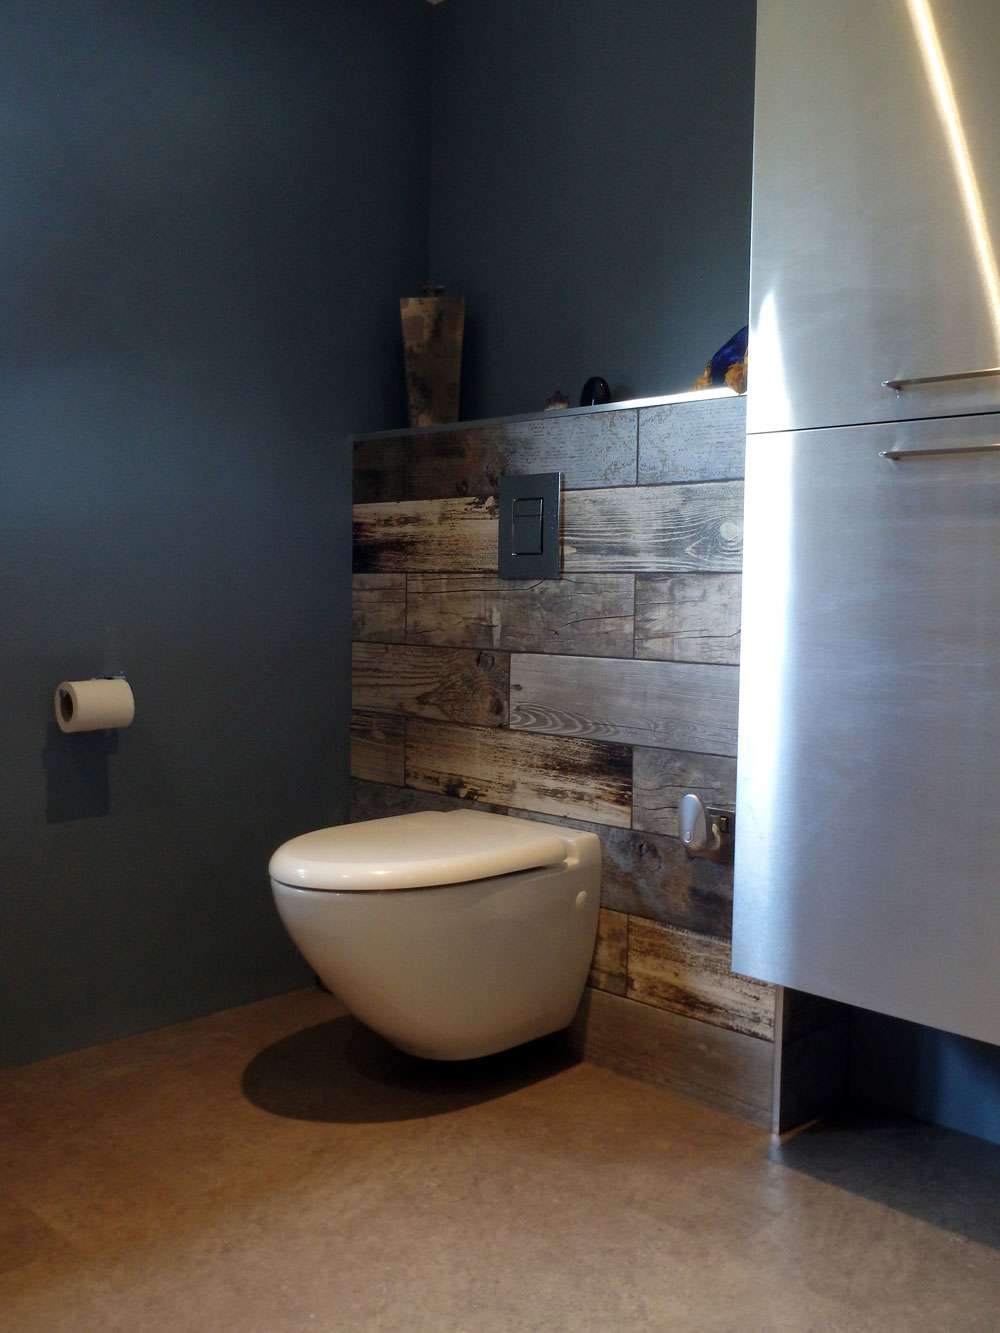 wood effect tiles behind toilet